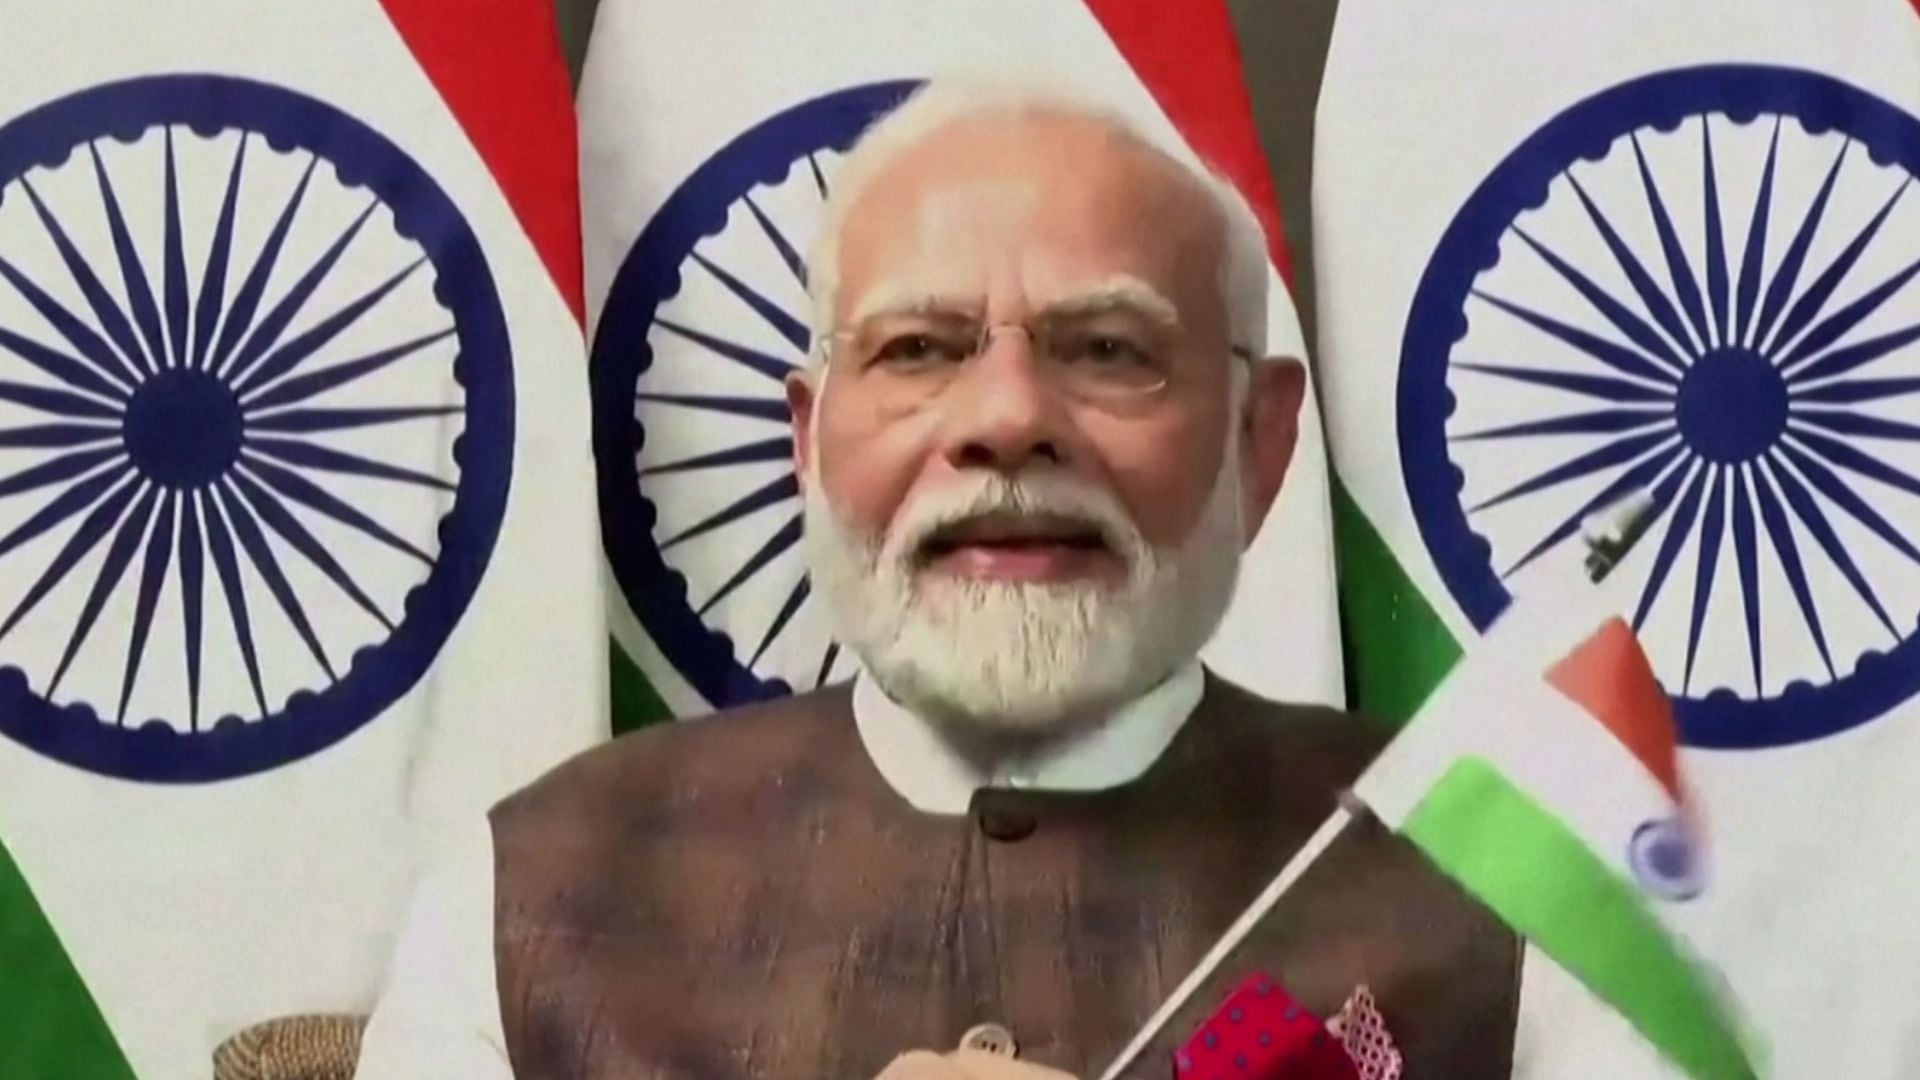 El primer ministro de la India, Narendra Modi, quien se encuentra en Sudáfrica para la cumbre de líderes de los BRICS, interrumpió su agenda para seguir el alunizaje en línea (ISRO)